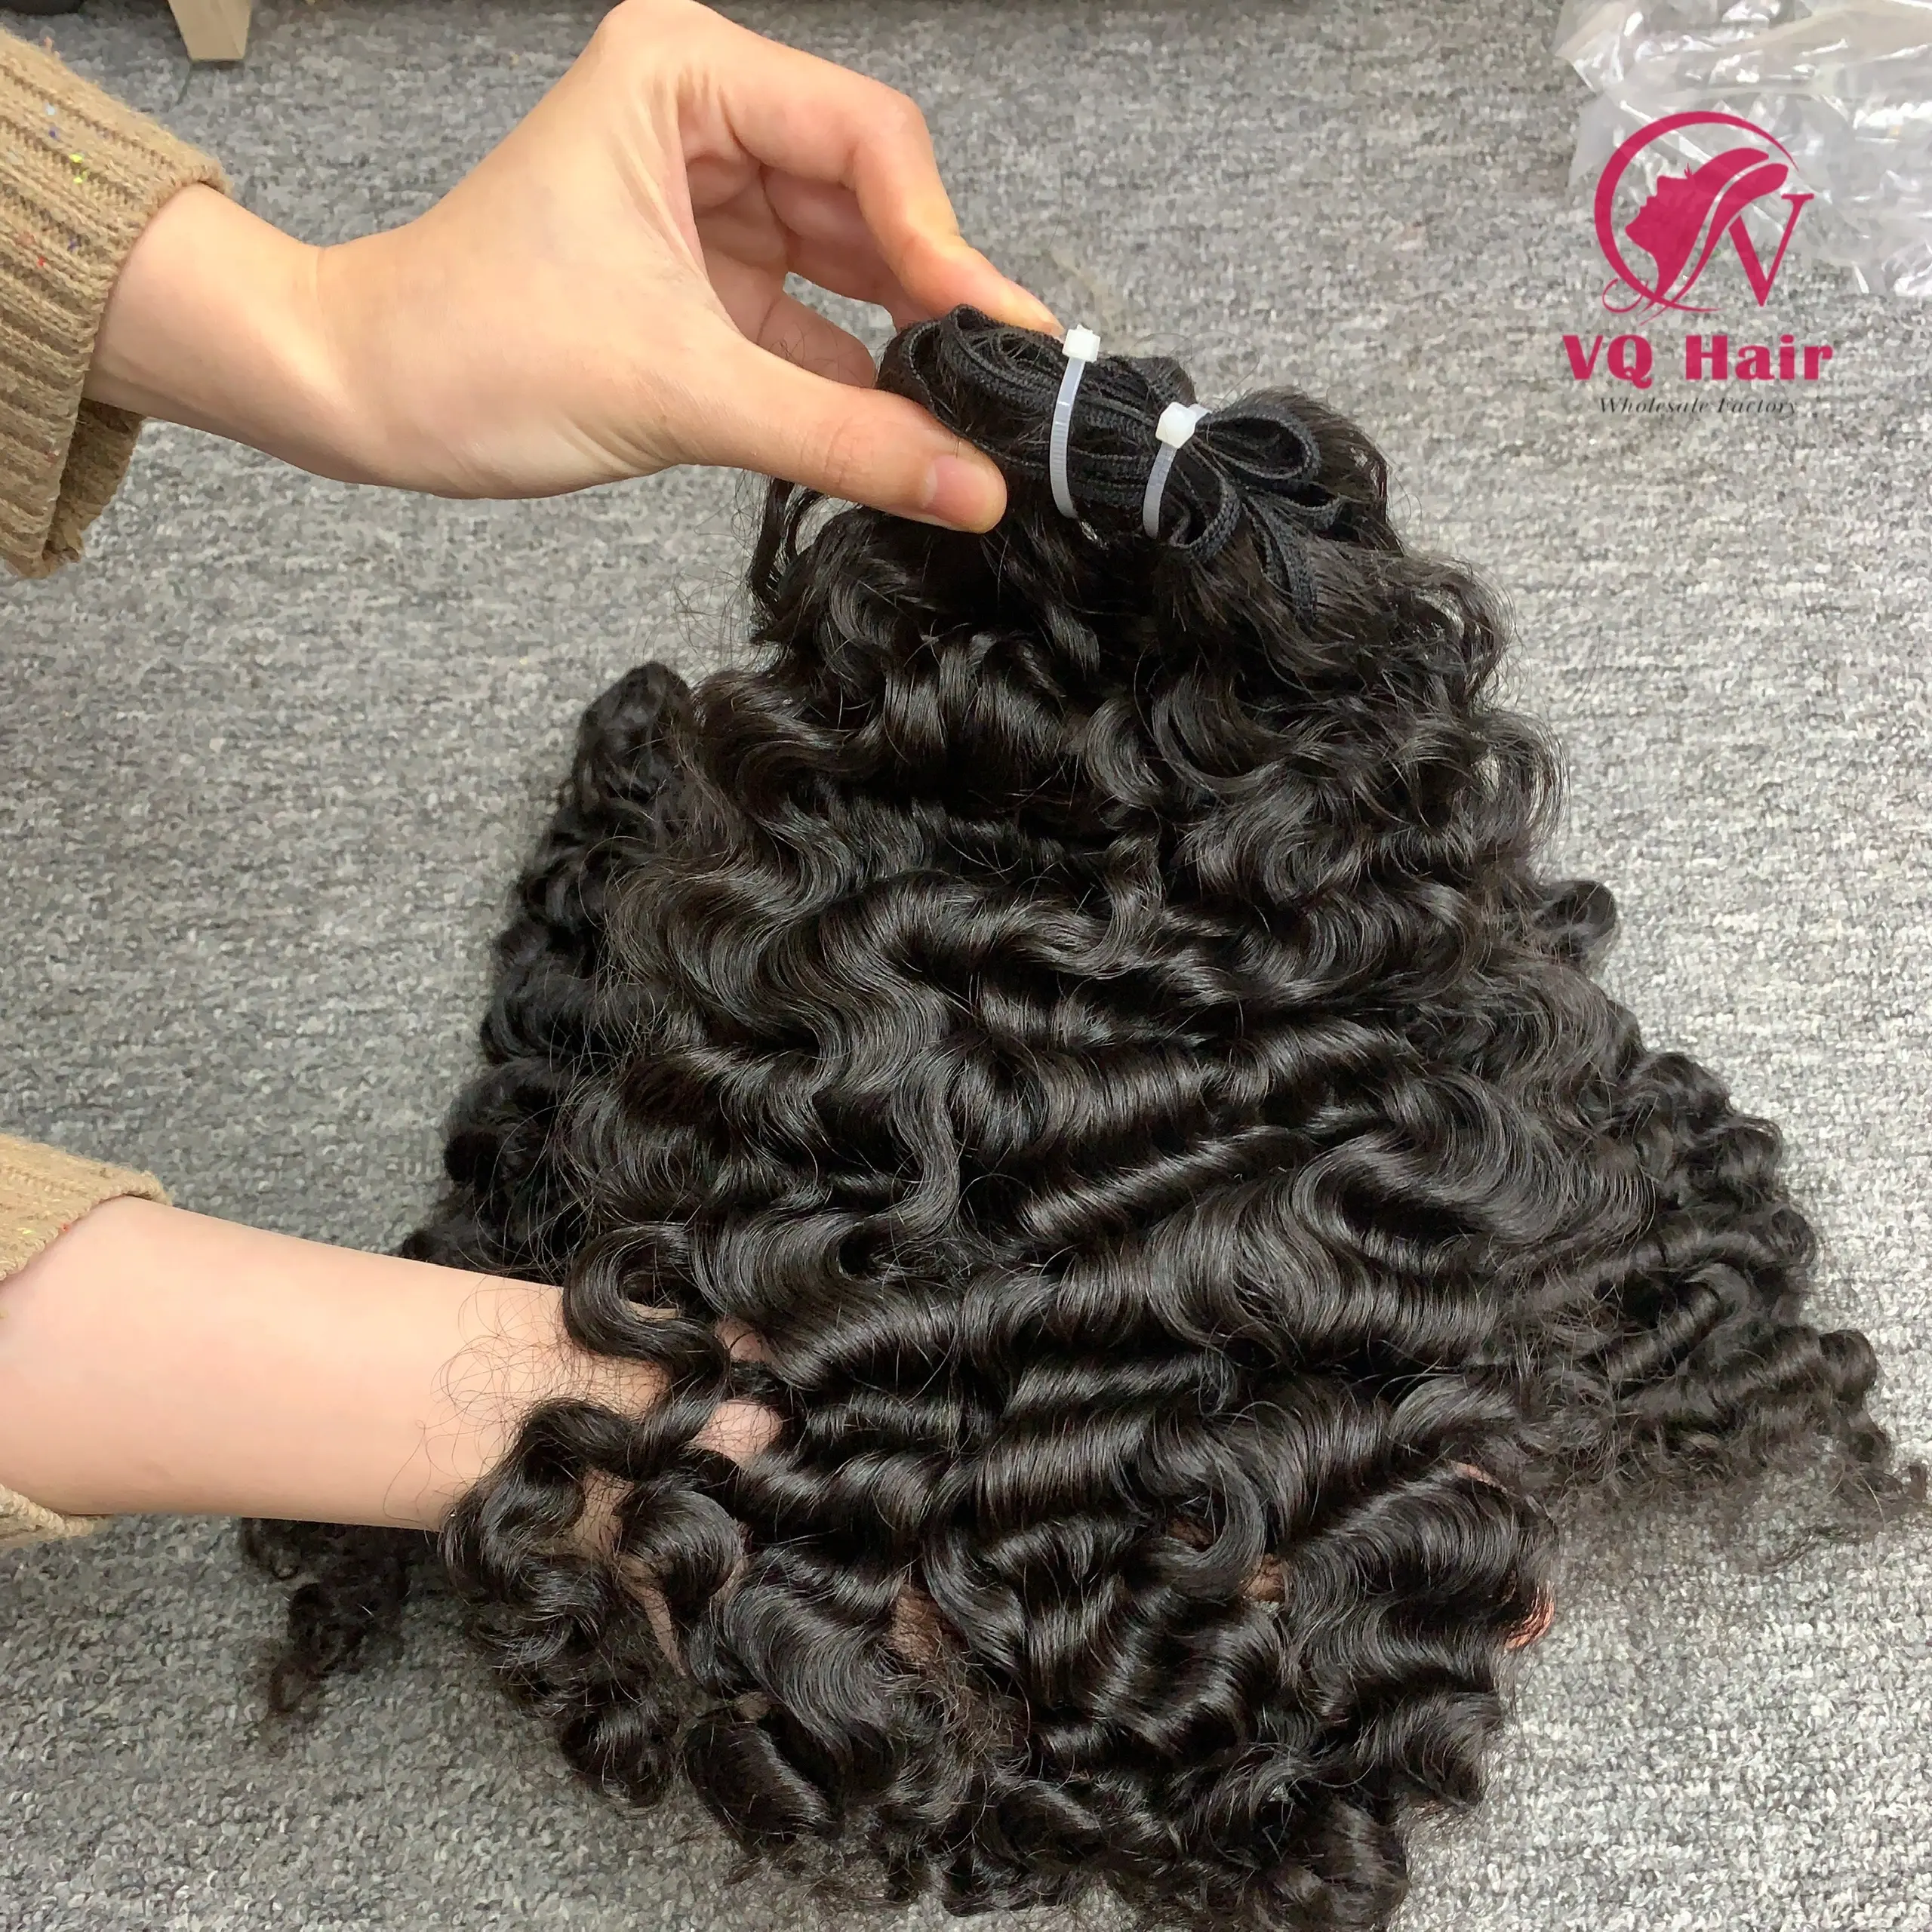 高級ベトナム髪ビルマ巻き毛100% 生髪卸売価格トップトレンドヘアスタイルドロップシップUPS DHL FEDEX